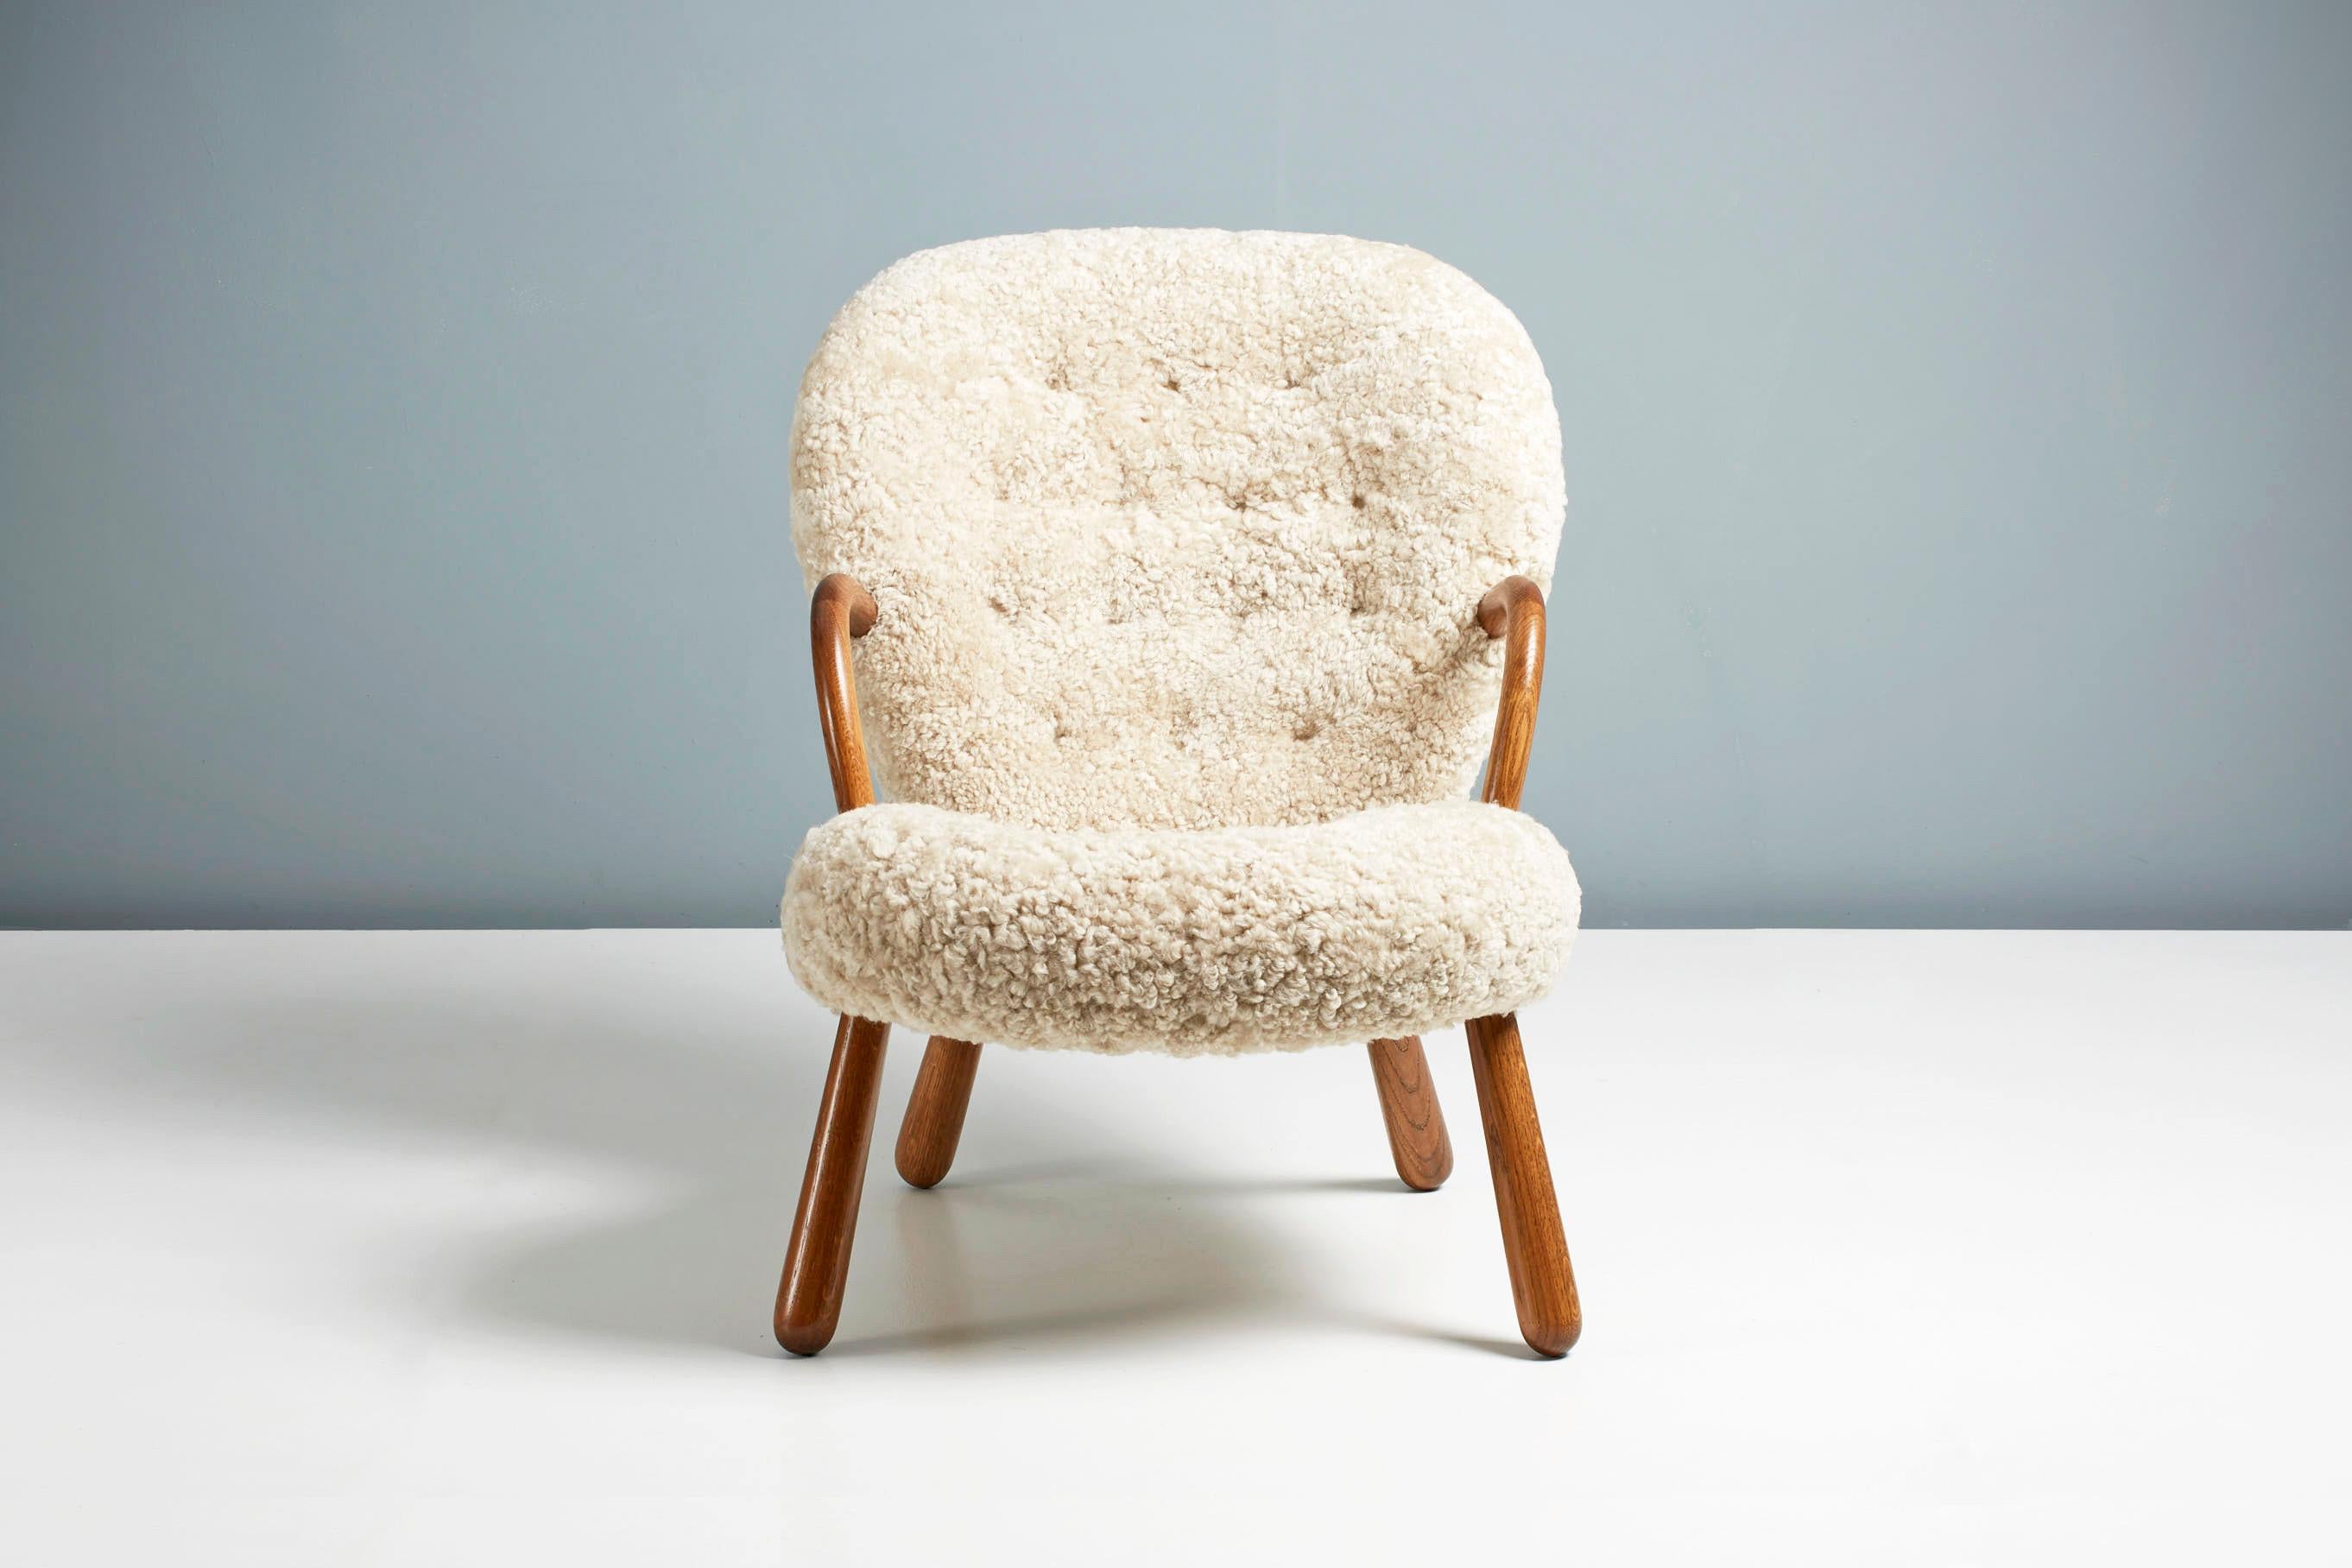 Offizielle Neuauflage des legendären Clam Chair von Arnold Madsen.

Dagmar ist stolz darauf, in Zusammenarbeit mit dem Nachlass von Arnold Madsen den Clam Chair - eines der beliebtesten und begehrtesten skandinavischen Möbeldesigns des 20.